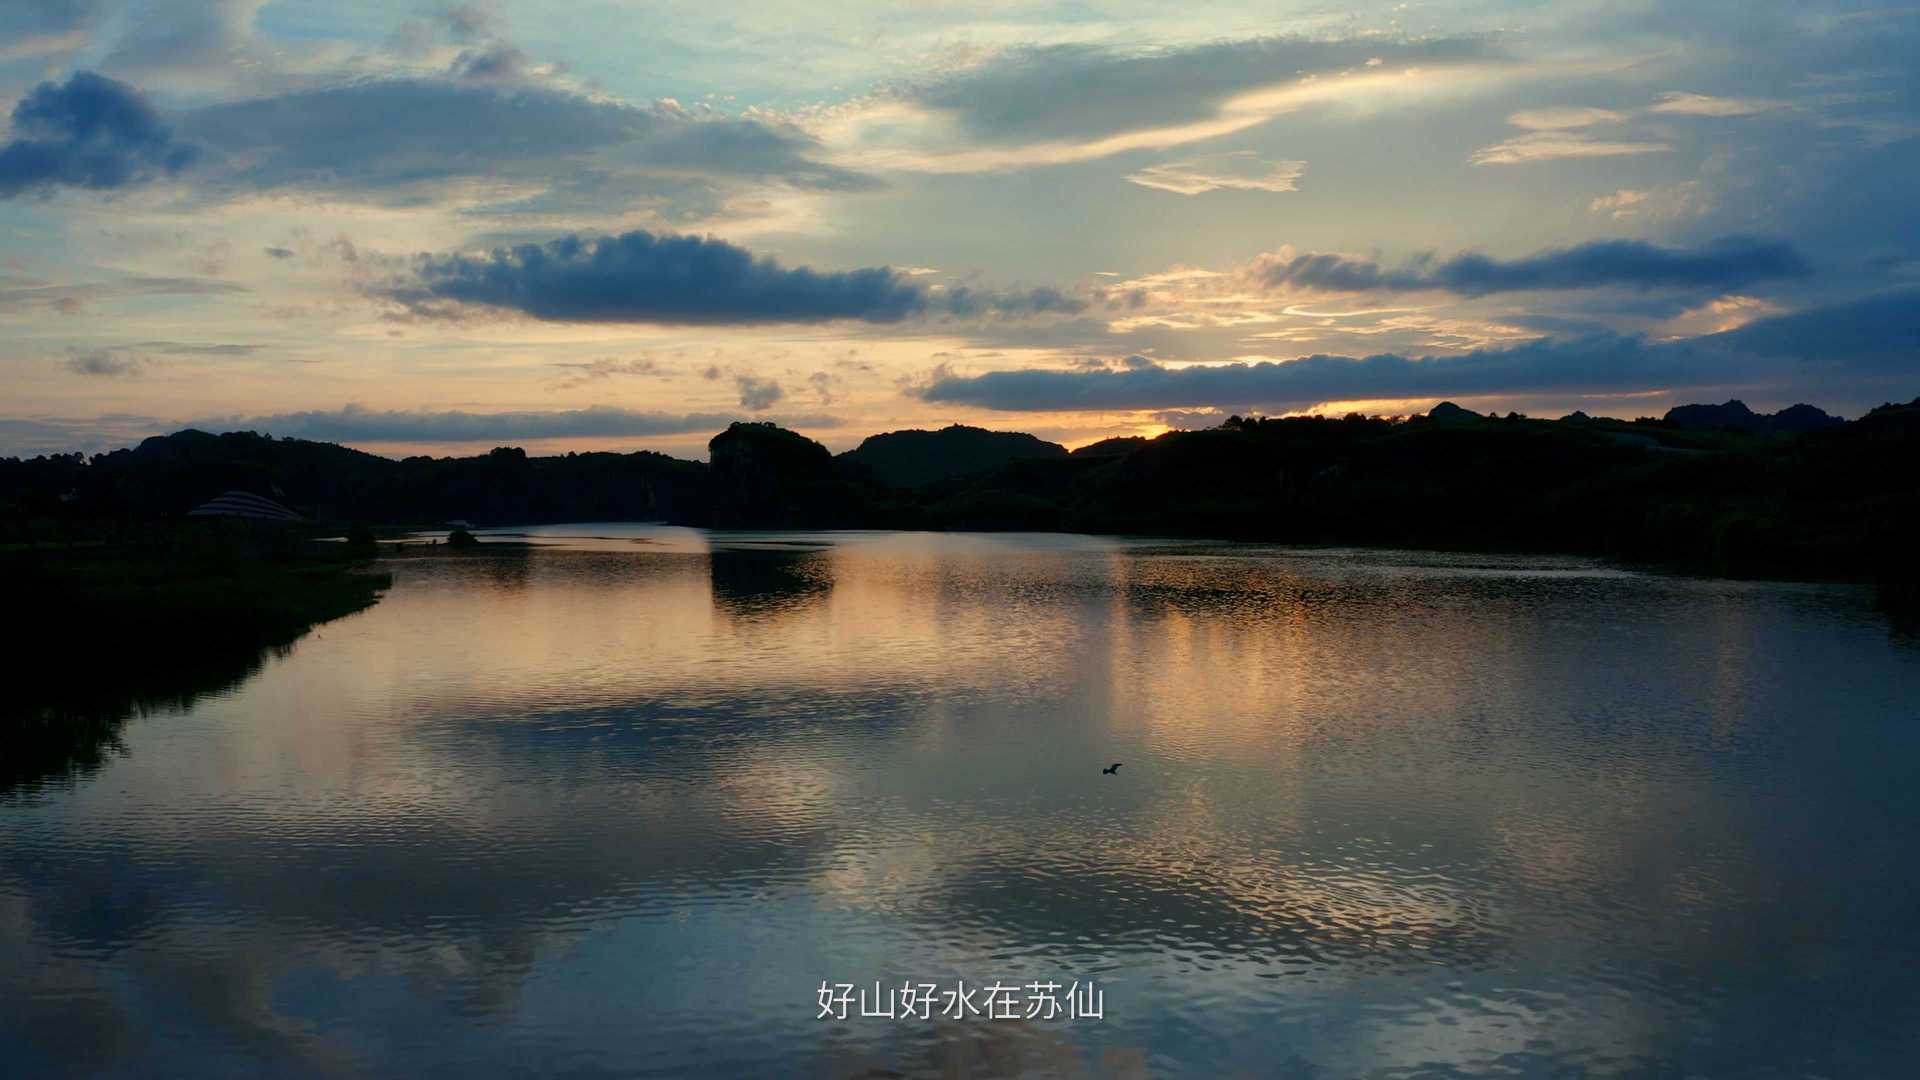 苏仙文旅宣传短片《仙境苏仙 魅力福地》